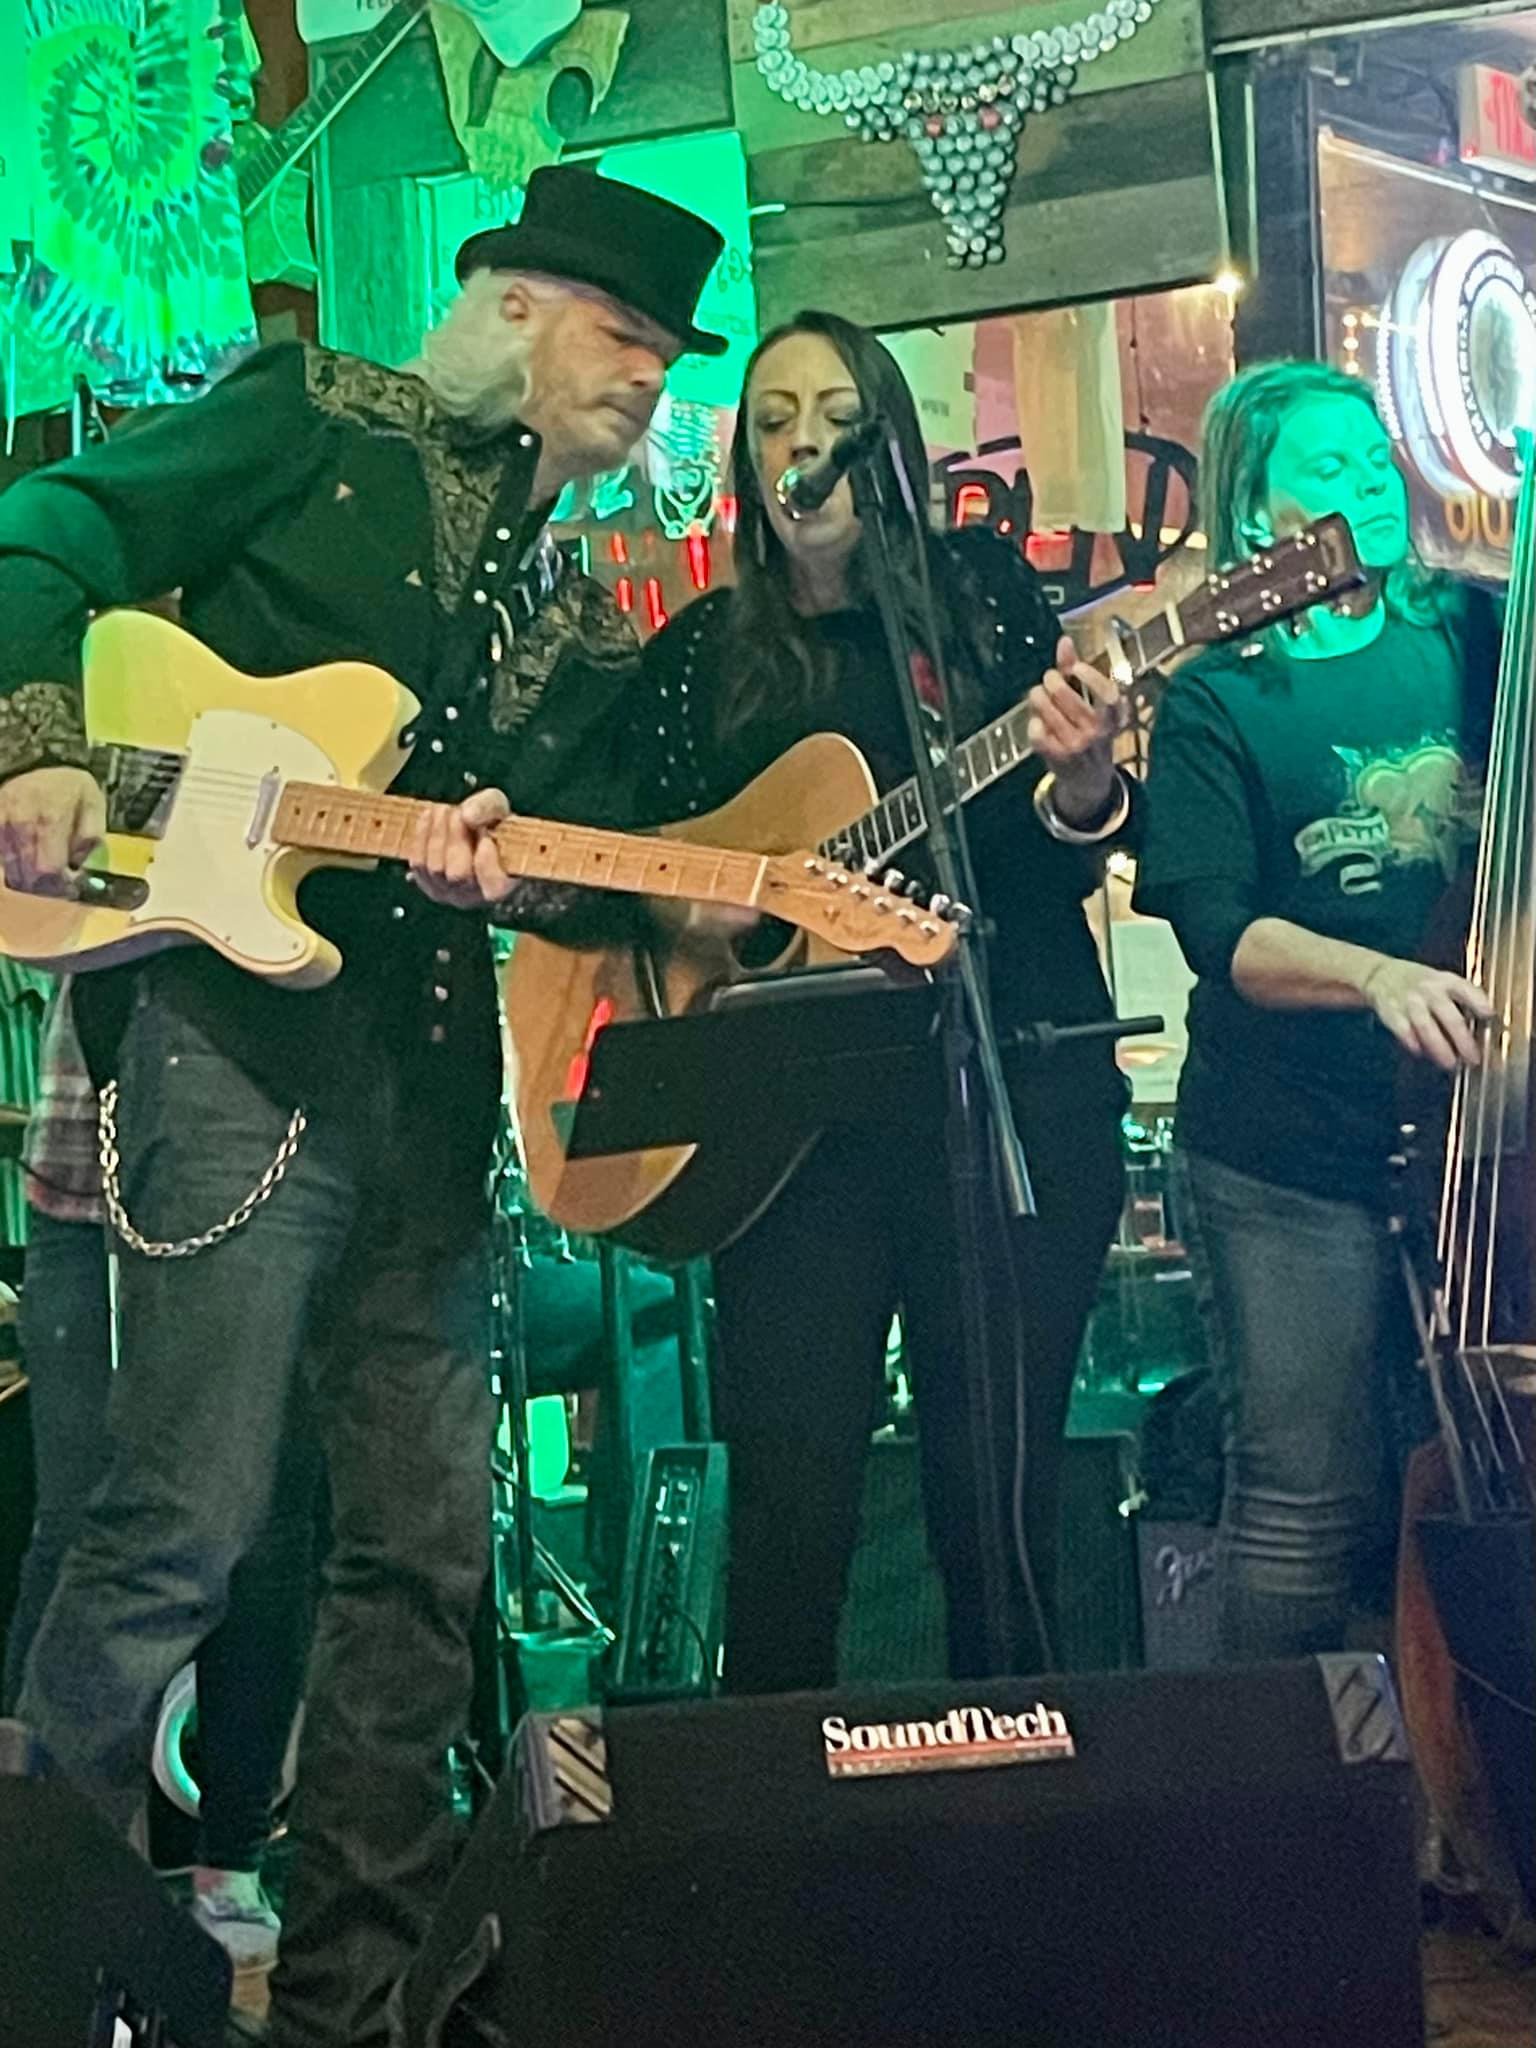 Julie Williams singing while playing guitar